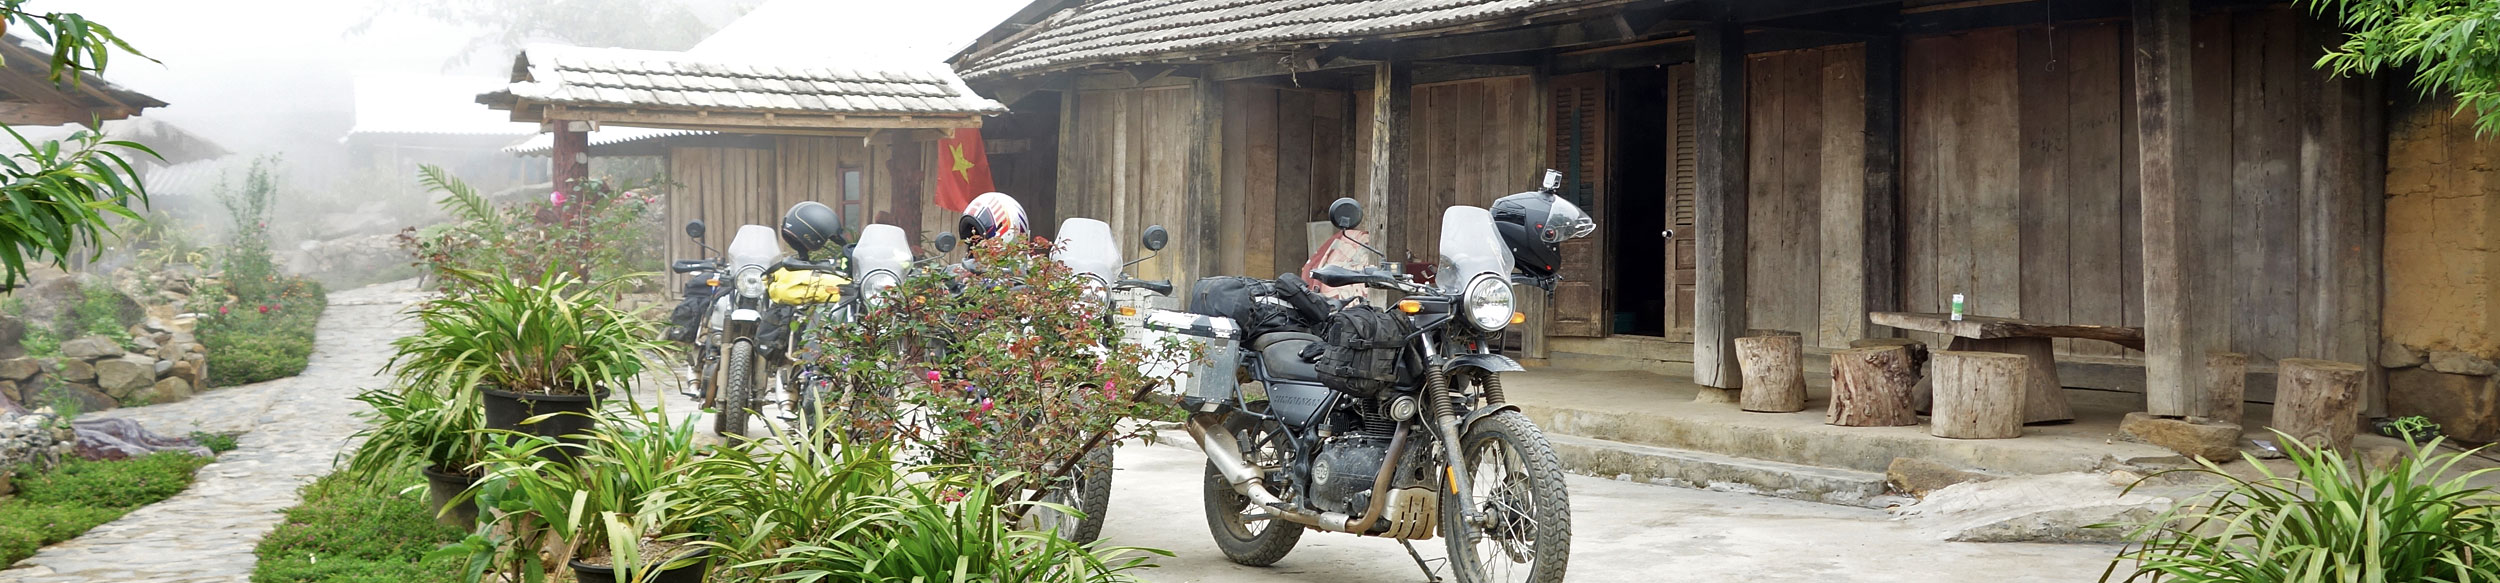 Le Vietnam à moto avec Carnets d'Asie